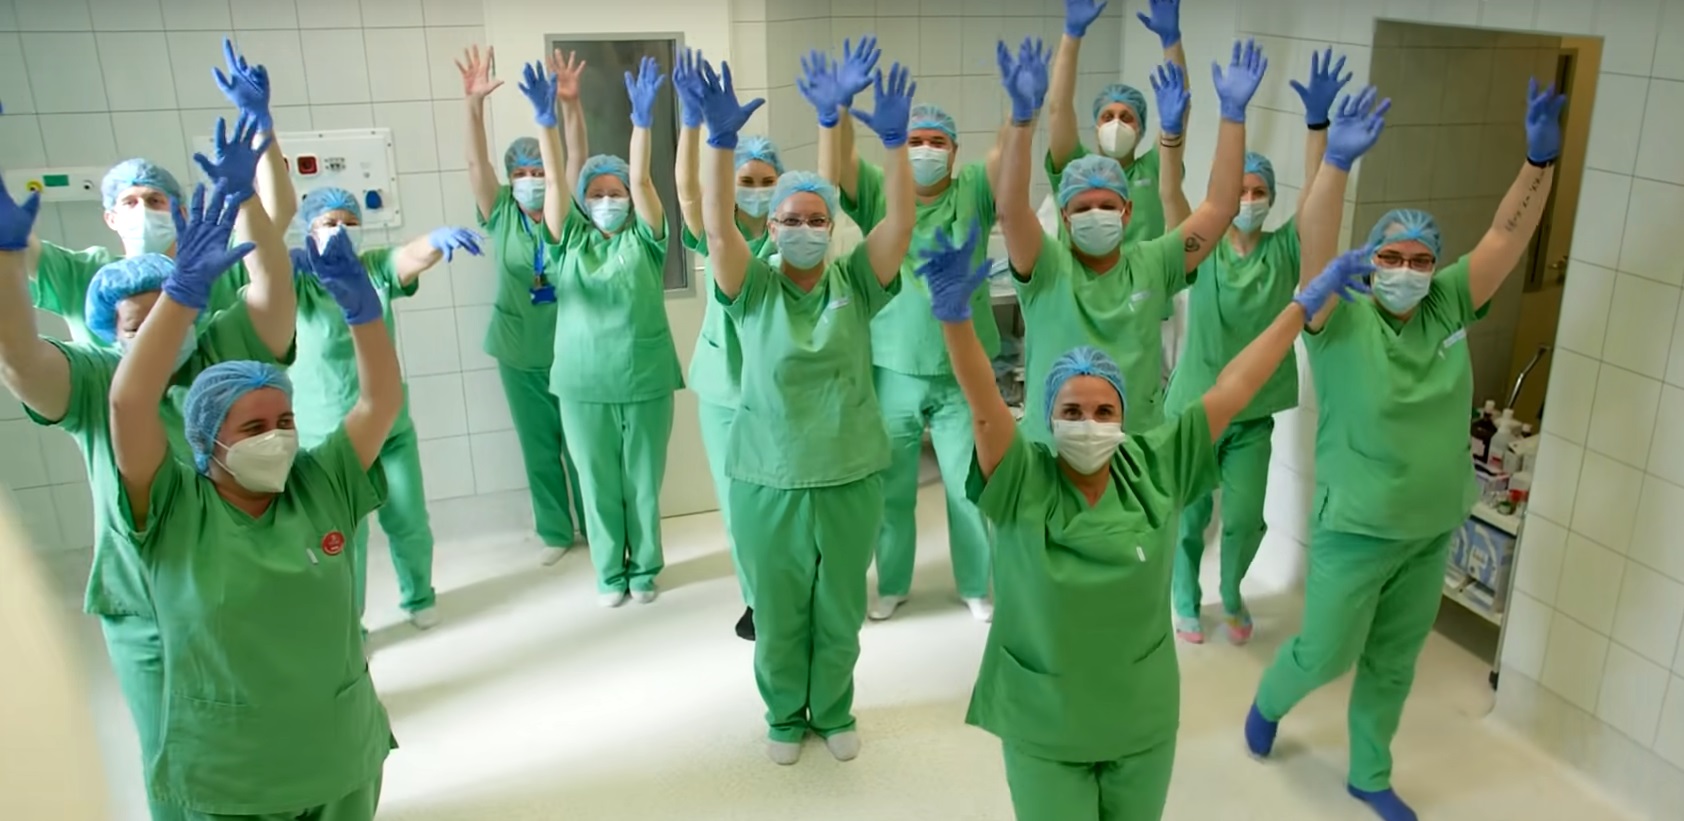 Betegeikért táncoltak a Bethesda Gyermekkórház dolgozói